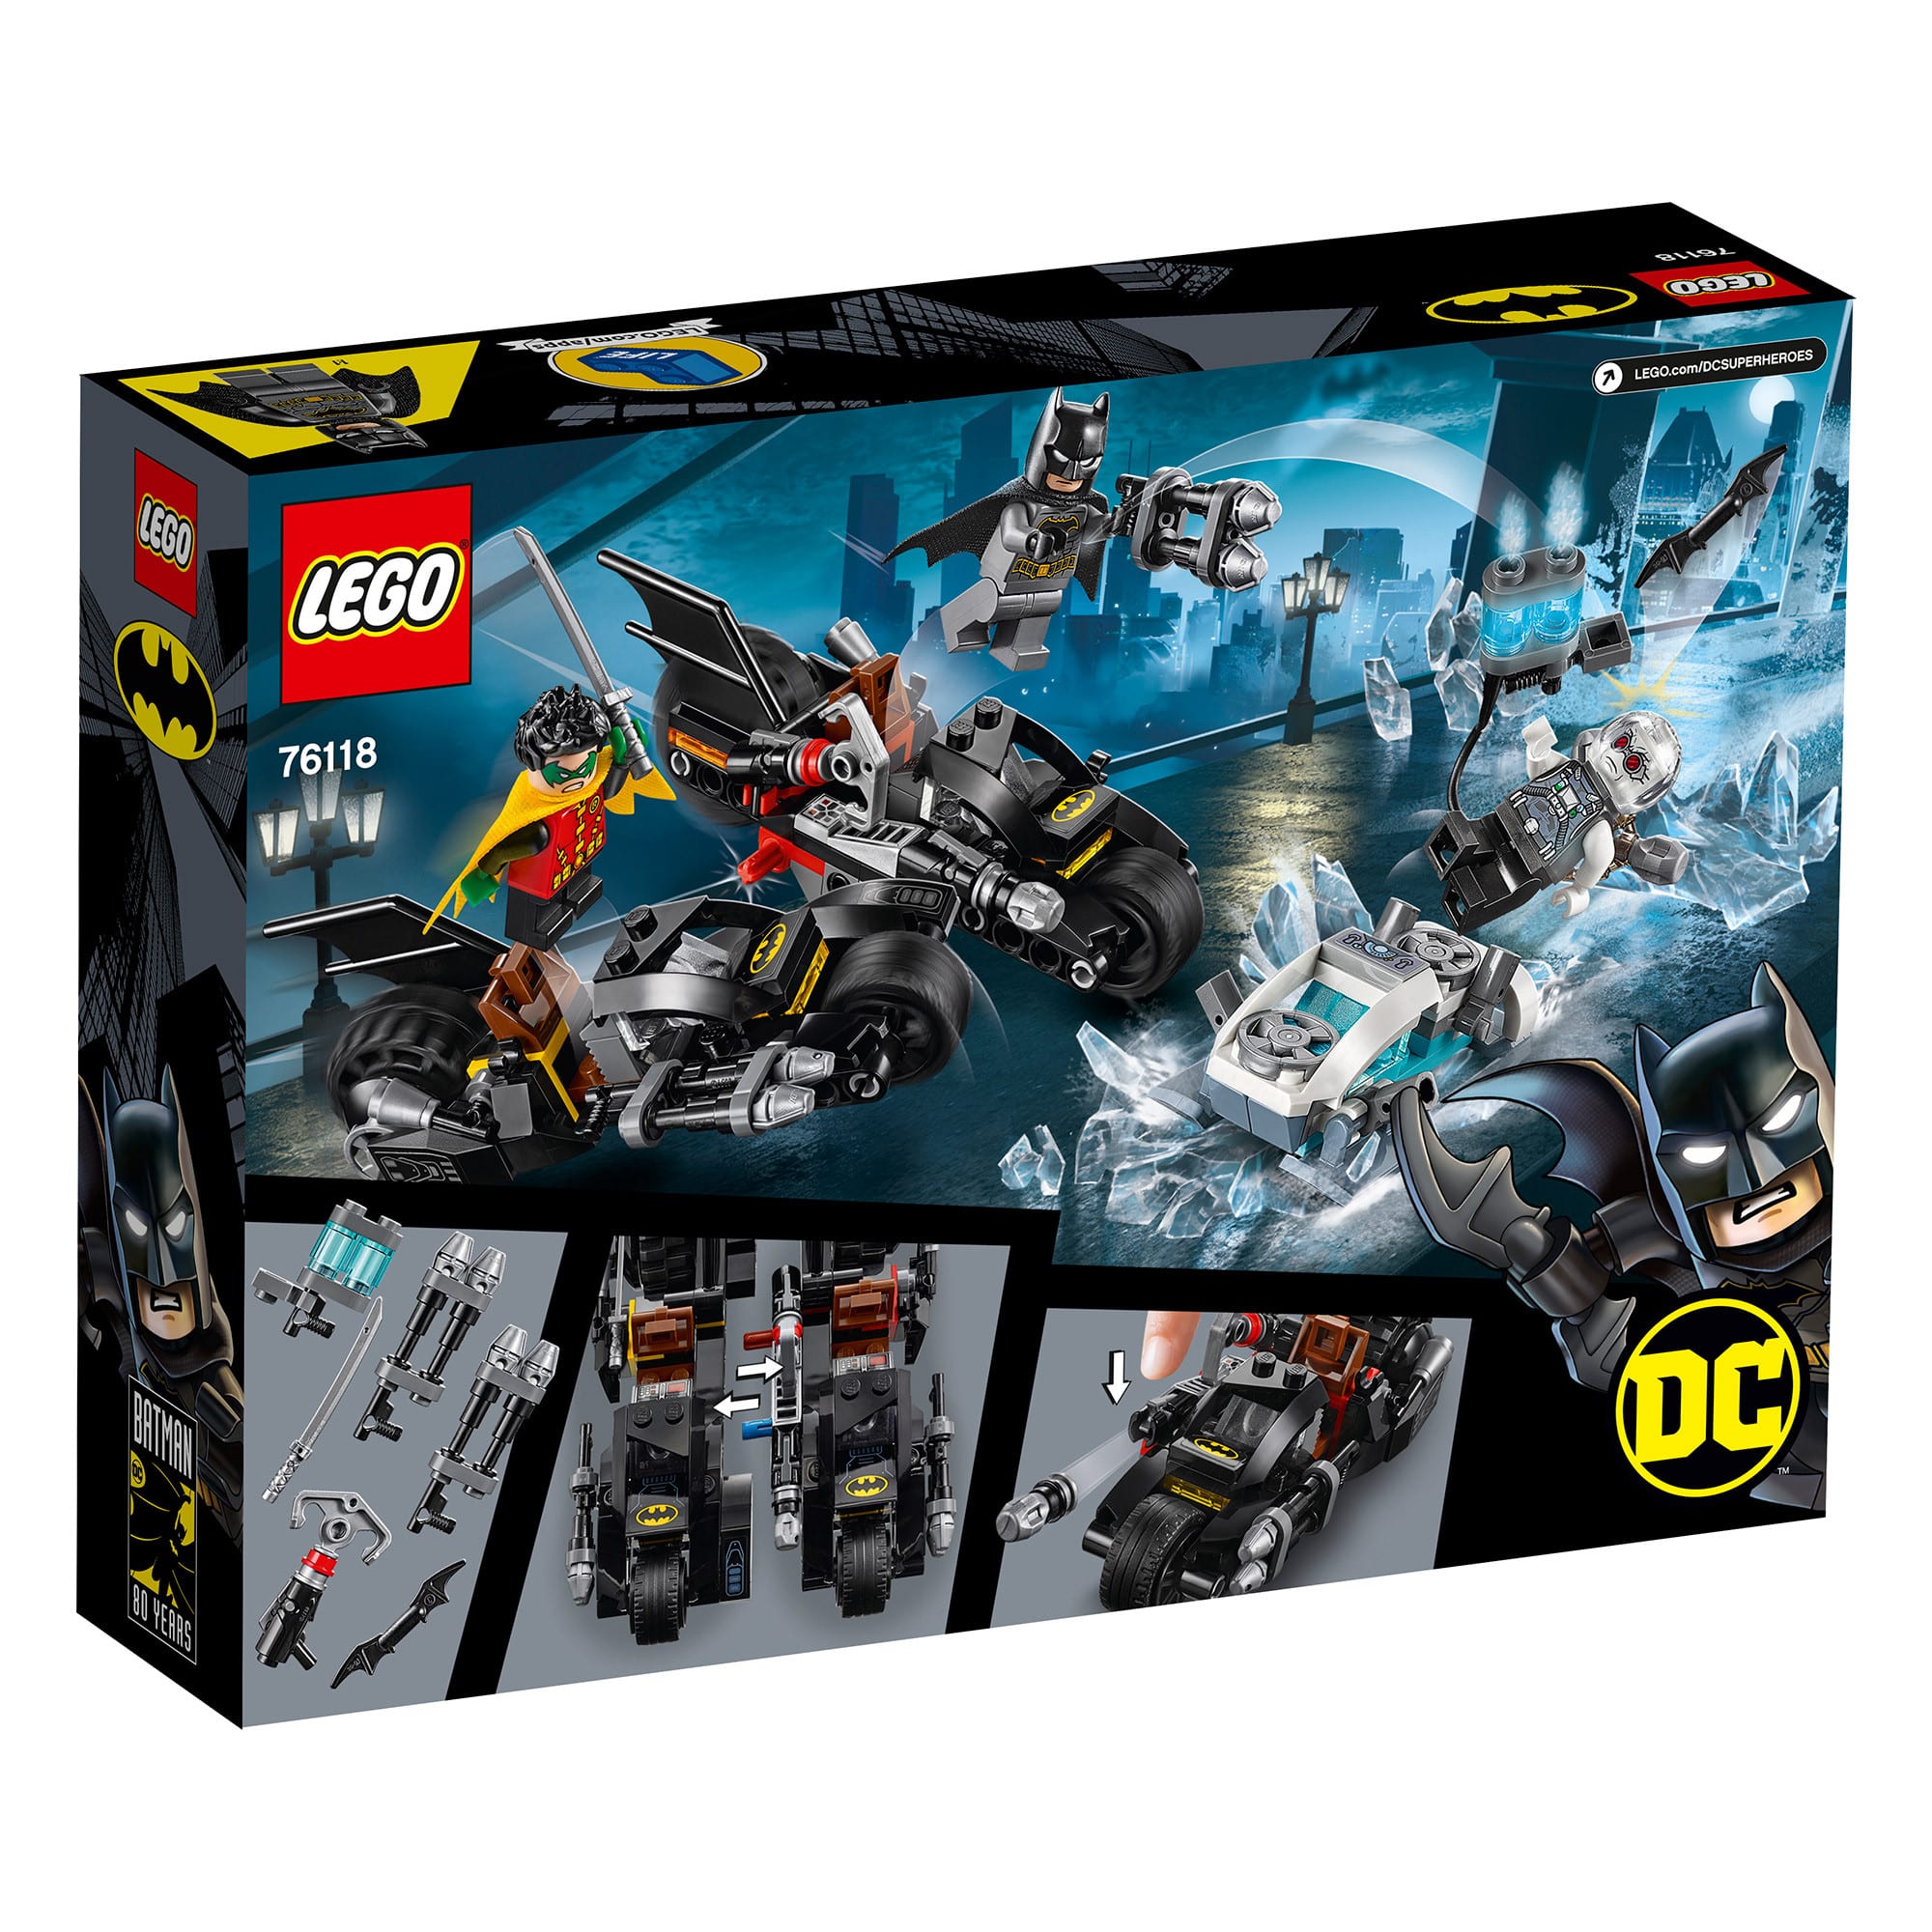 LEGO DC Batman - 76118 Mr Freeze Batcycle Battle